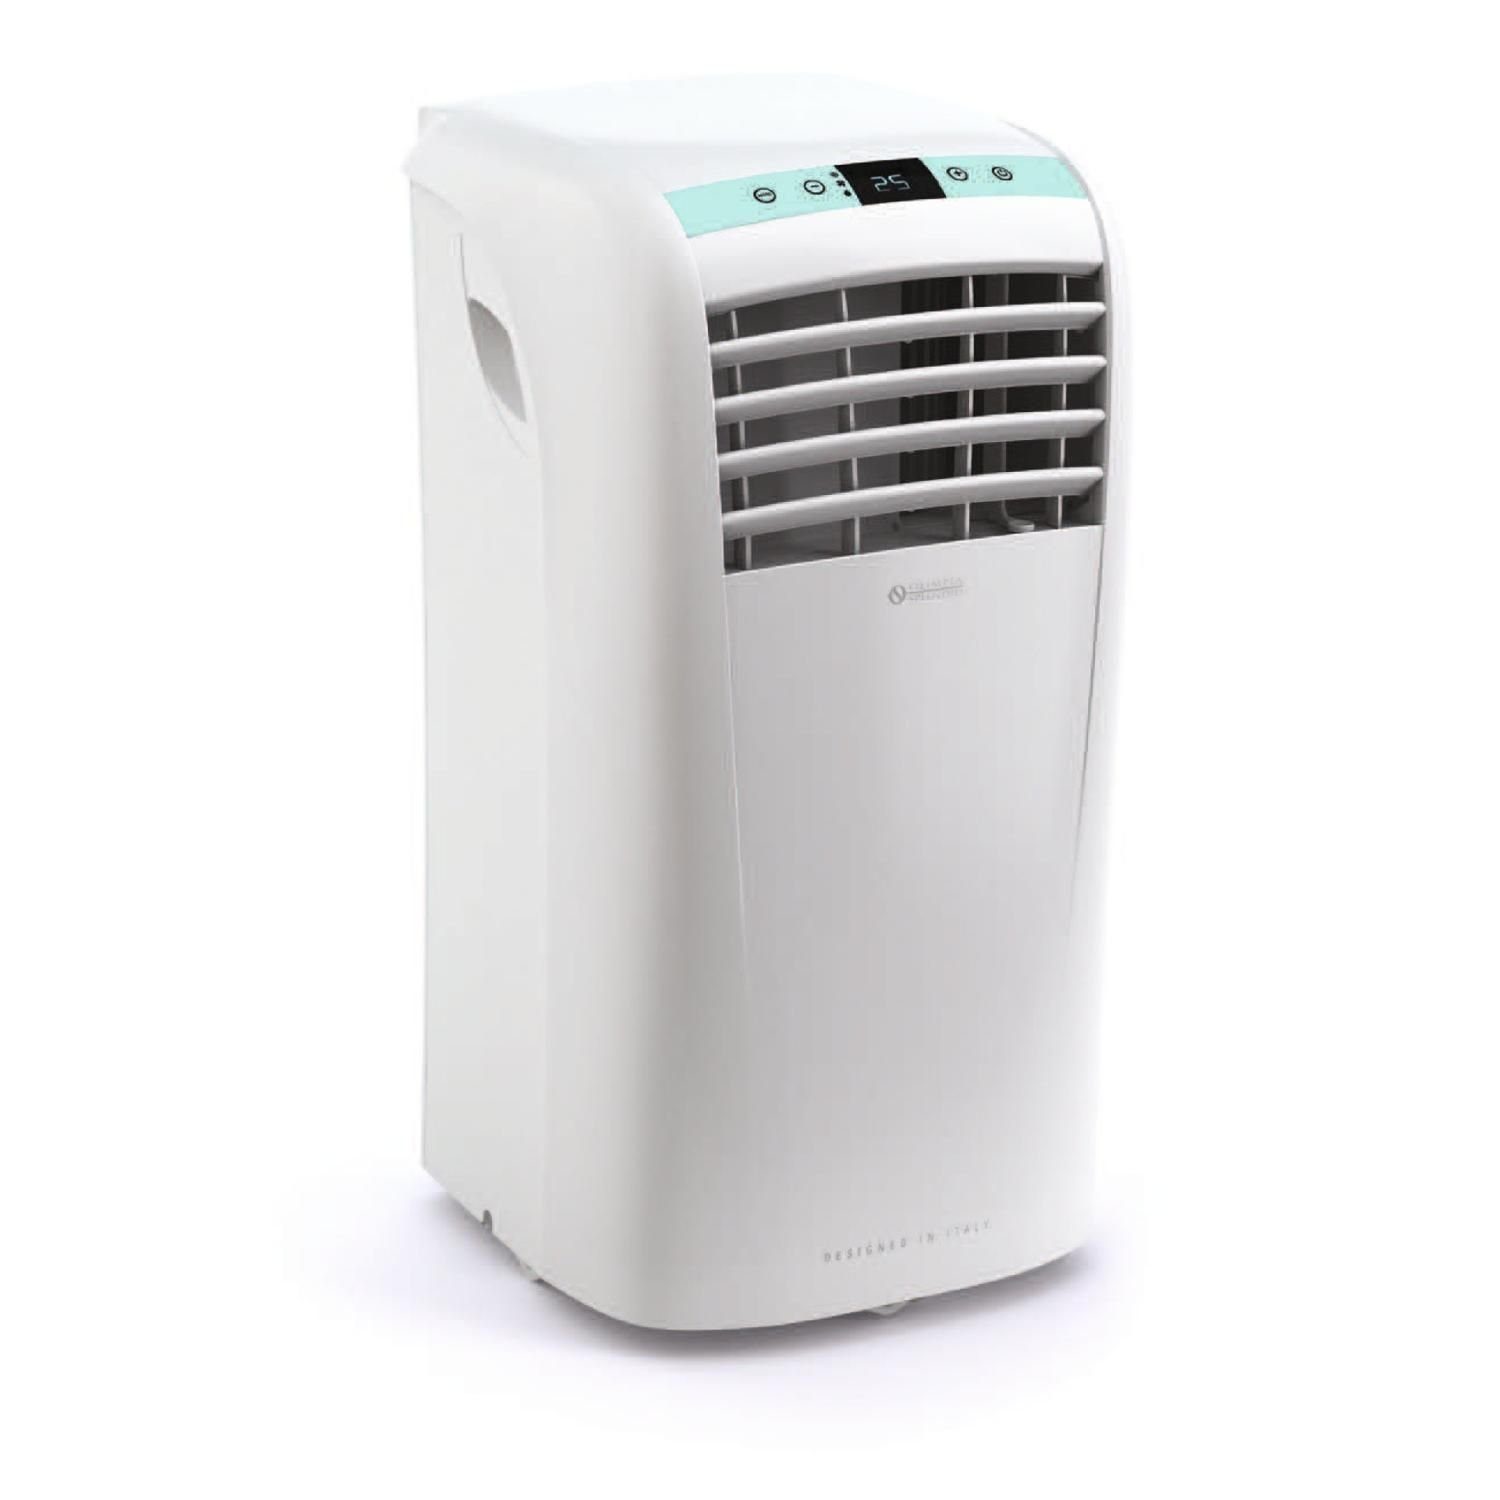 OLIMPIA SPLENDID Klimagerät DOLCECLIMA COMPACT 10 P Klimagerät Kühlen, Entfeuchten, Ventilieren, BLUE AIR-TECHNOLOGIE, minimale Geräuschentwicklung, tragbar